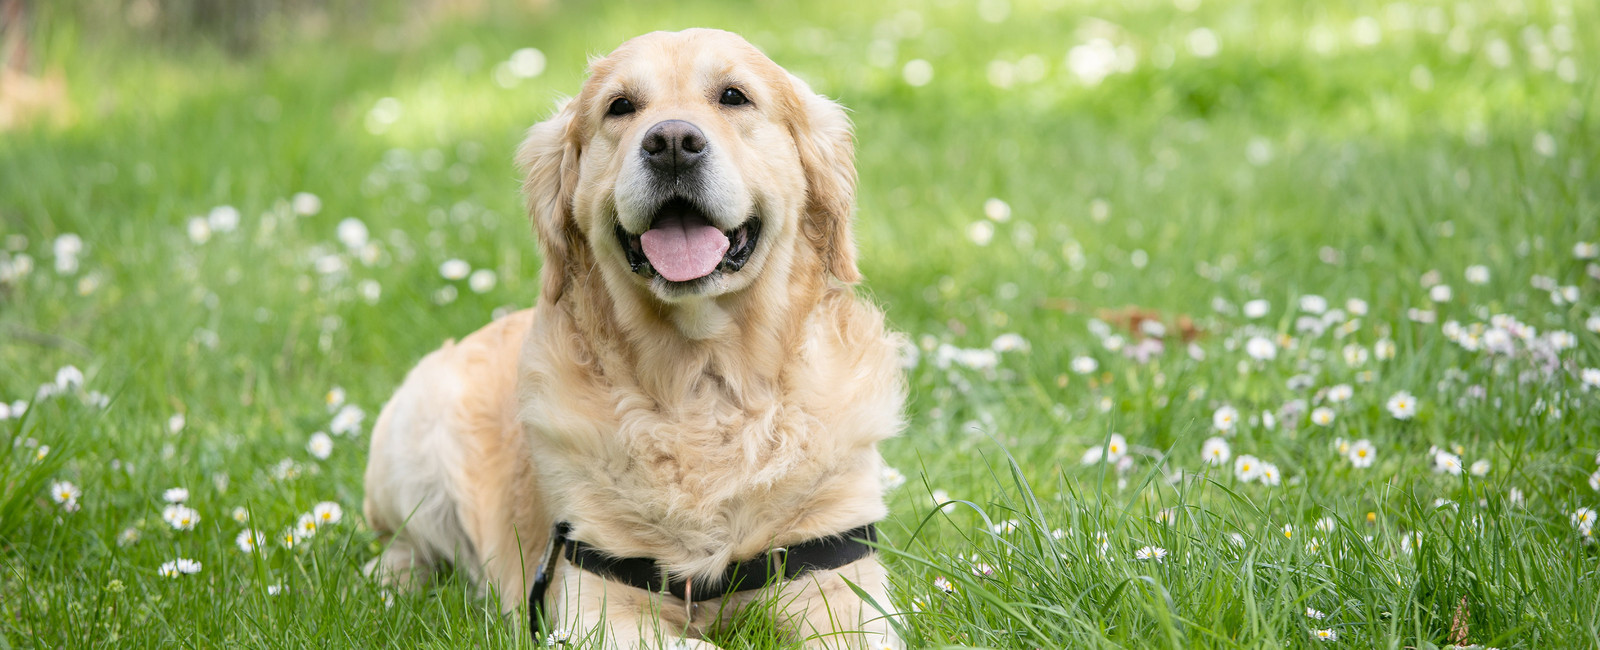 Warum fressen Hunde Gras? Hätten Sie’s gewusst?